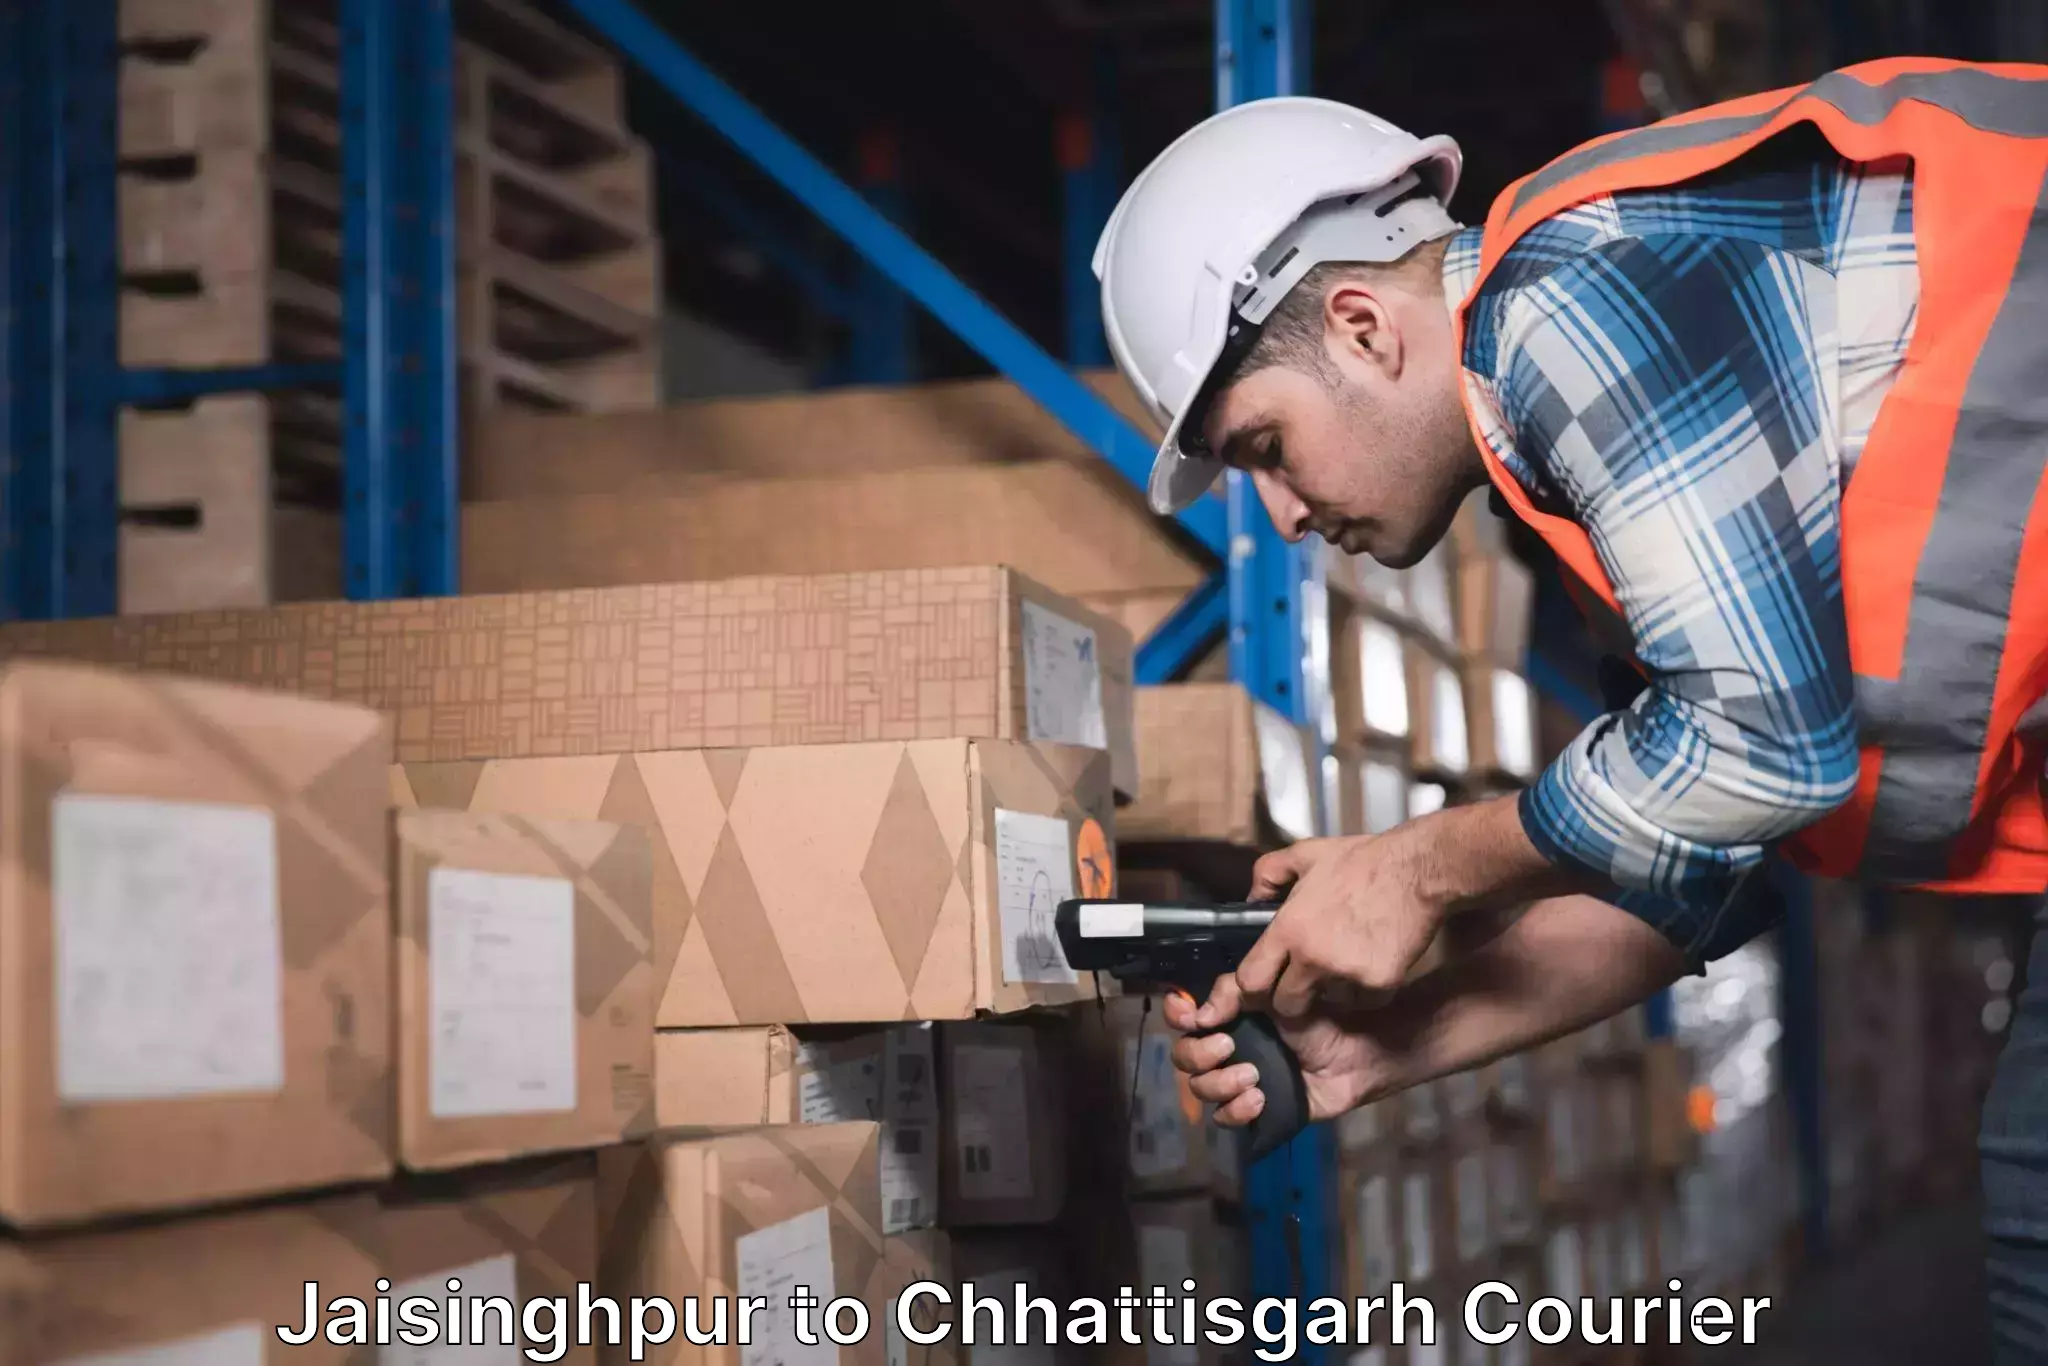 Efficient courier operations in Jaisinghpur to Bhilai